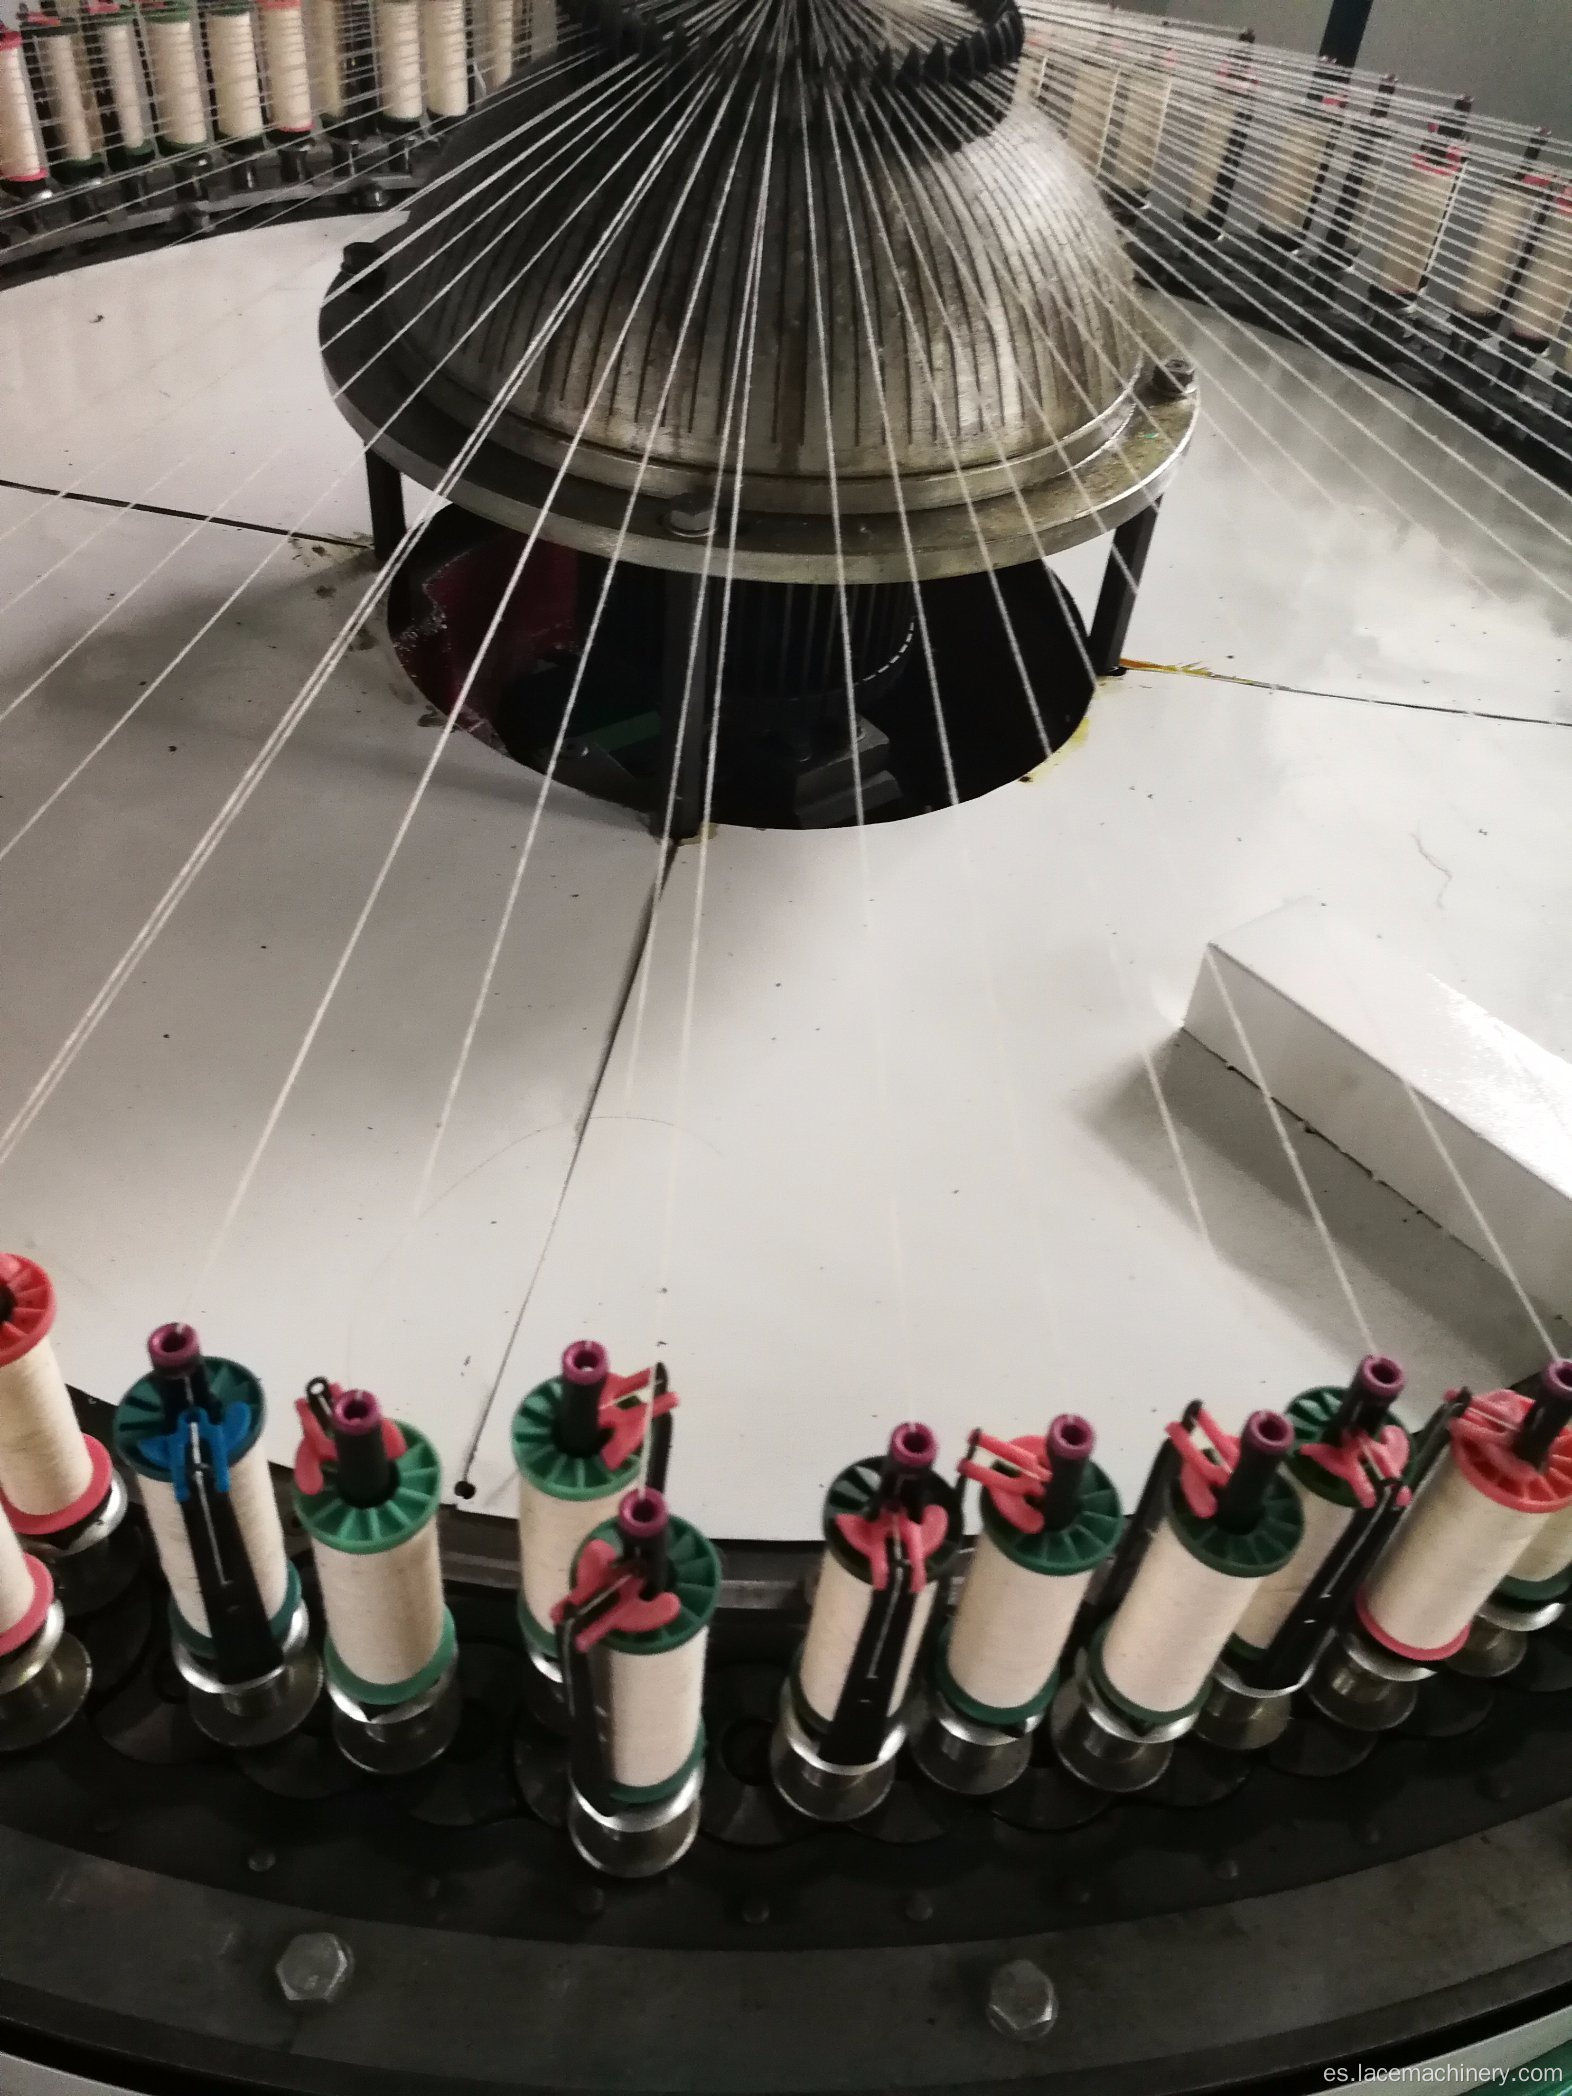 Máquina de tejer encaje de hilo de algodón computarizada